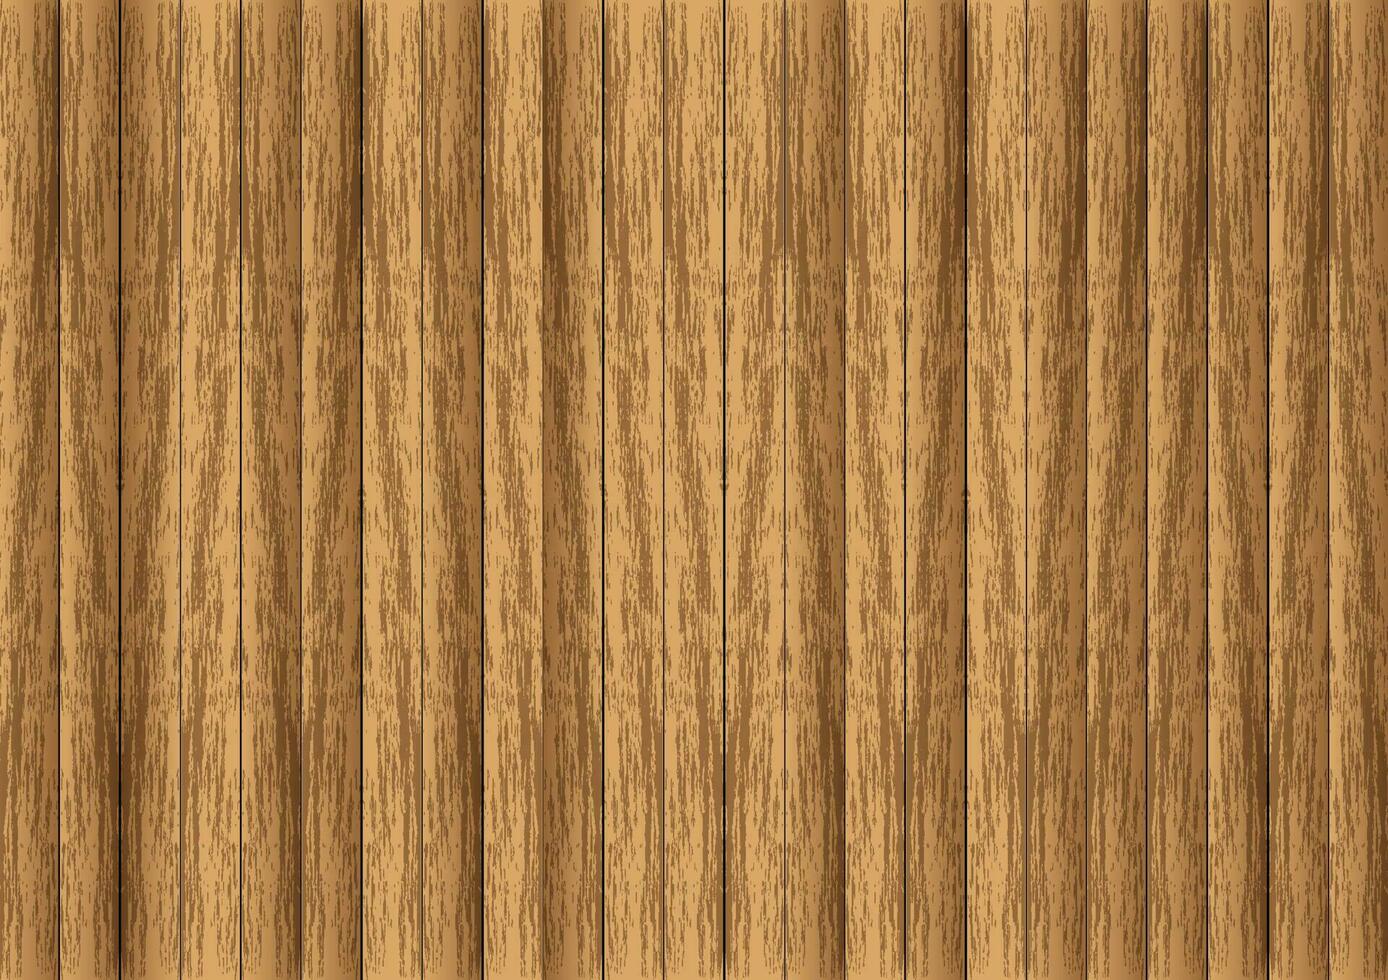 natuurlijk hout structuur vector. abstract houten patroon achtergrond. elegant materiaal hout oppervlakte illustratie. vloer, muur, meubilair interieur ontwerp naar gebruiken. vector